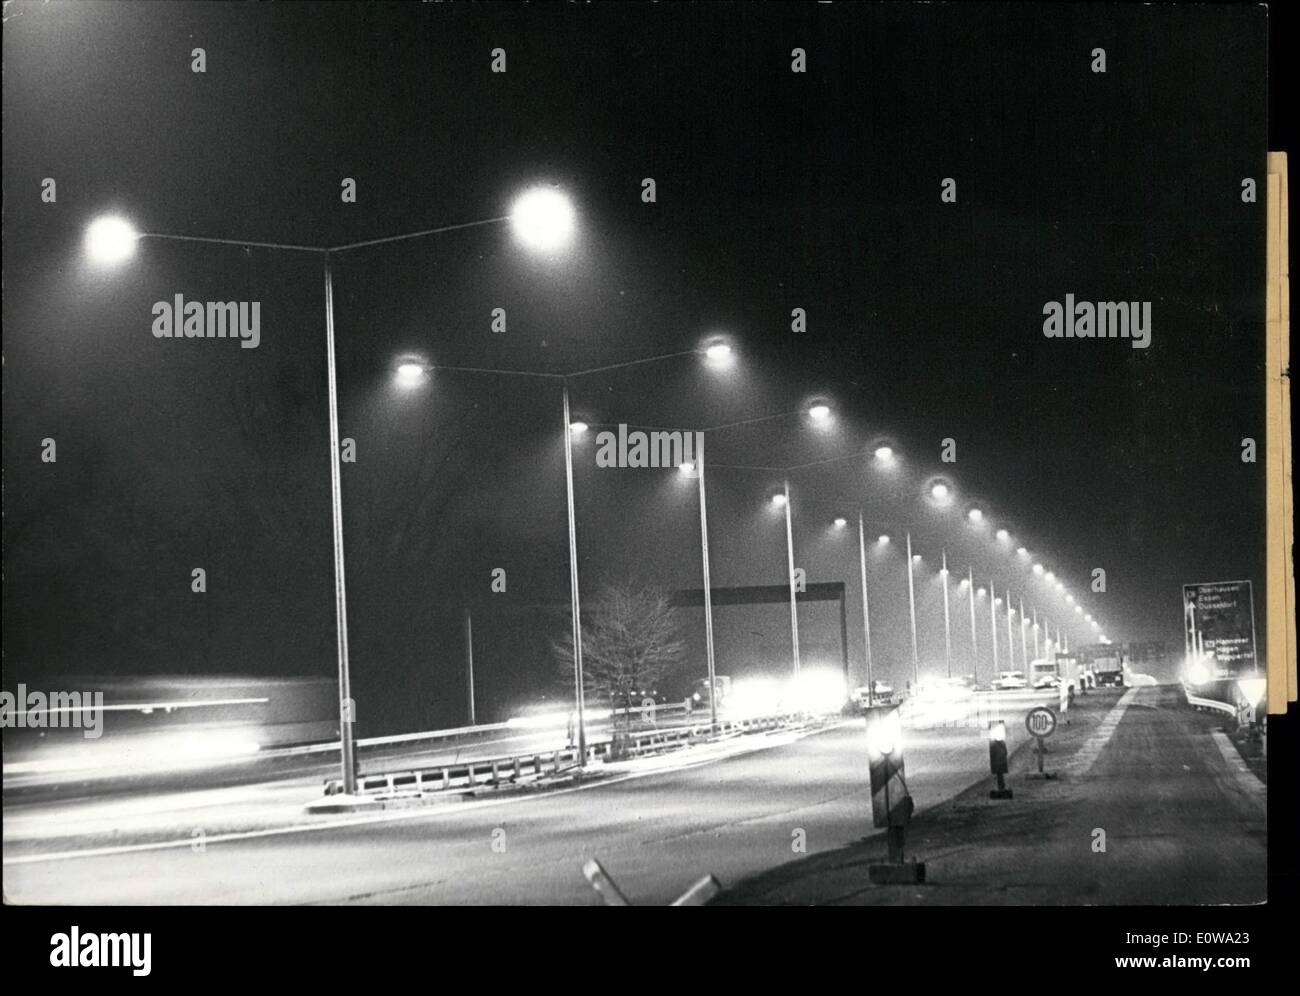 3. März 1962 - beleuchtet '' Autobahn'' in Deutschland die erste... Dr. Seebohm, Minister für Verkehr der Bundesrepublik Deutschland - am 14. März 1962 - schaltet die Beleuchtung des '' Autobhan'' zwischen Köln und Leverkusen. Etwa 50.000 bis 60.000 Autos passieren täglich die 5 Meilen lange Teil und diese voll '' Deutschlands '' schnelle Autobahnen '' zu beleuchten. PS: Ein Teil der "Autobahn", in diesem Fall '' Quecksilber (Merkur) - Dampf-Licht auf einem Mast zu verdoppeln. Stockfoto